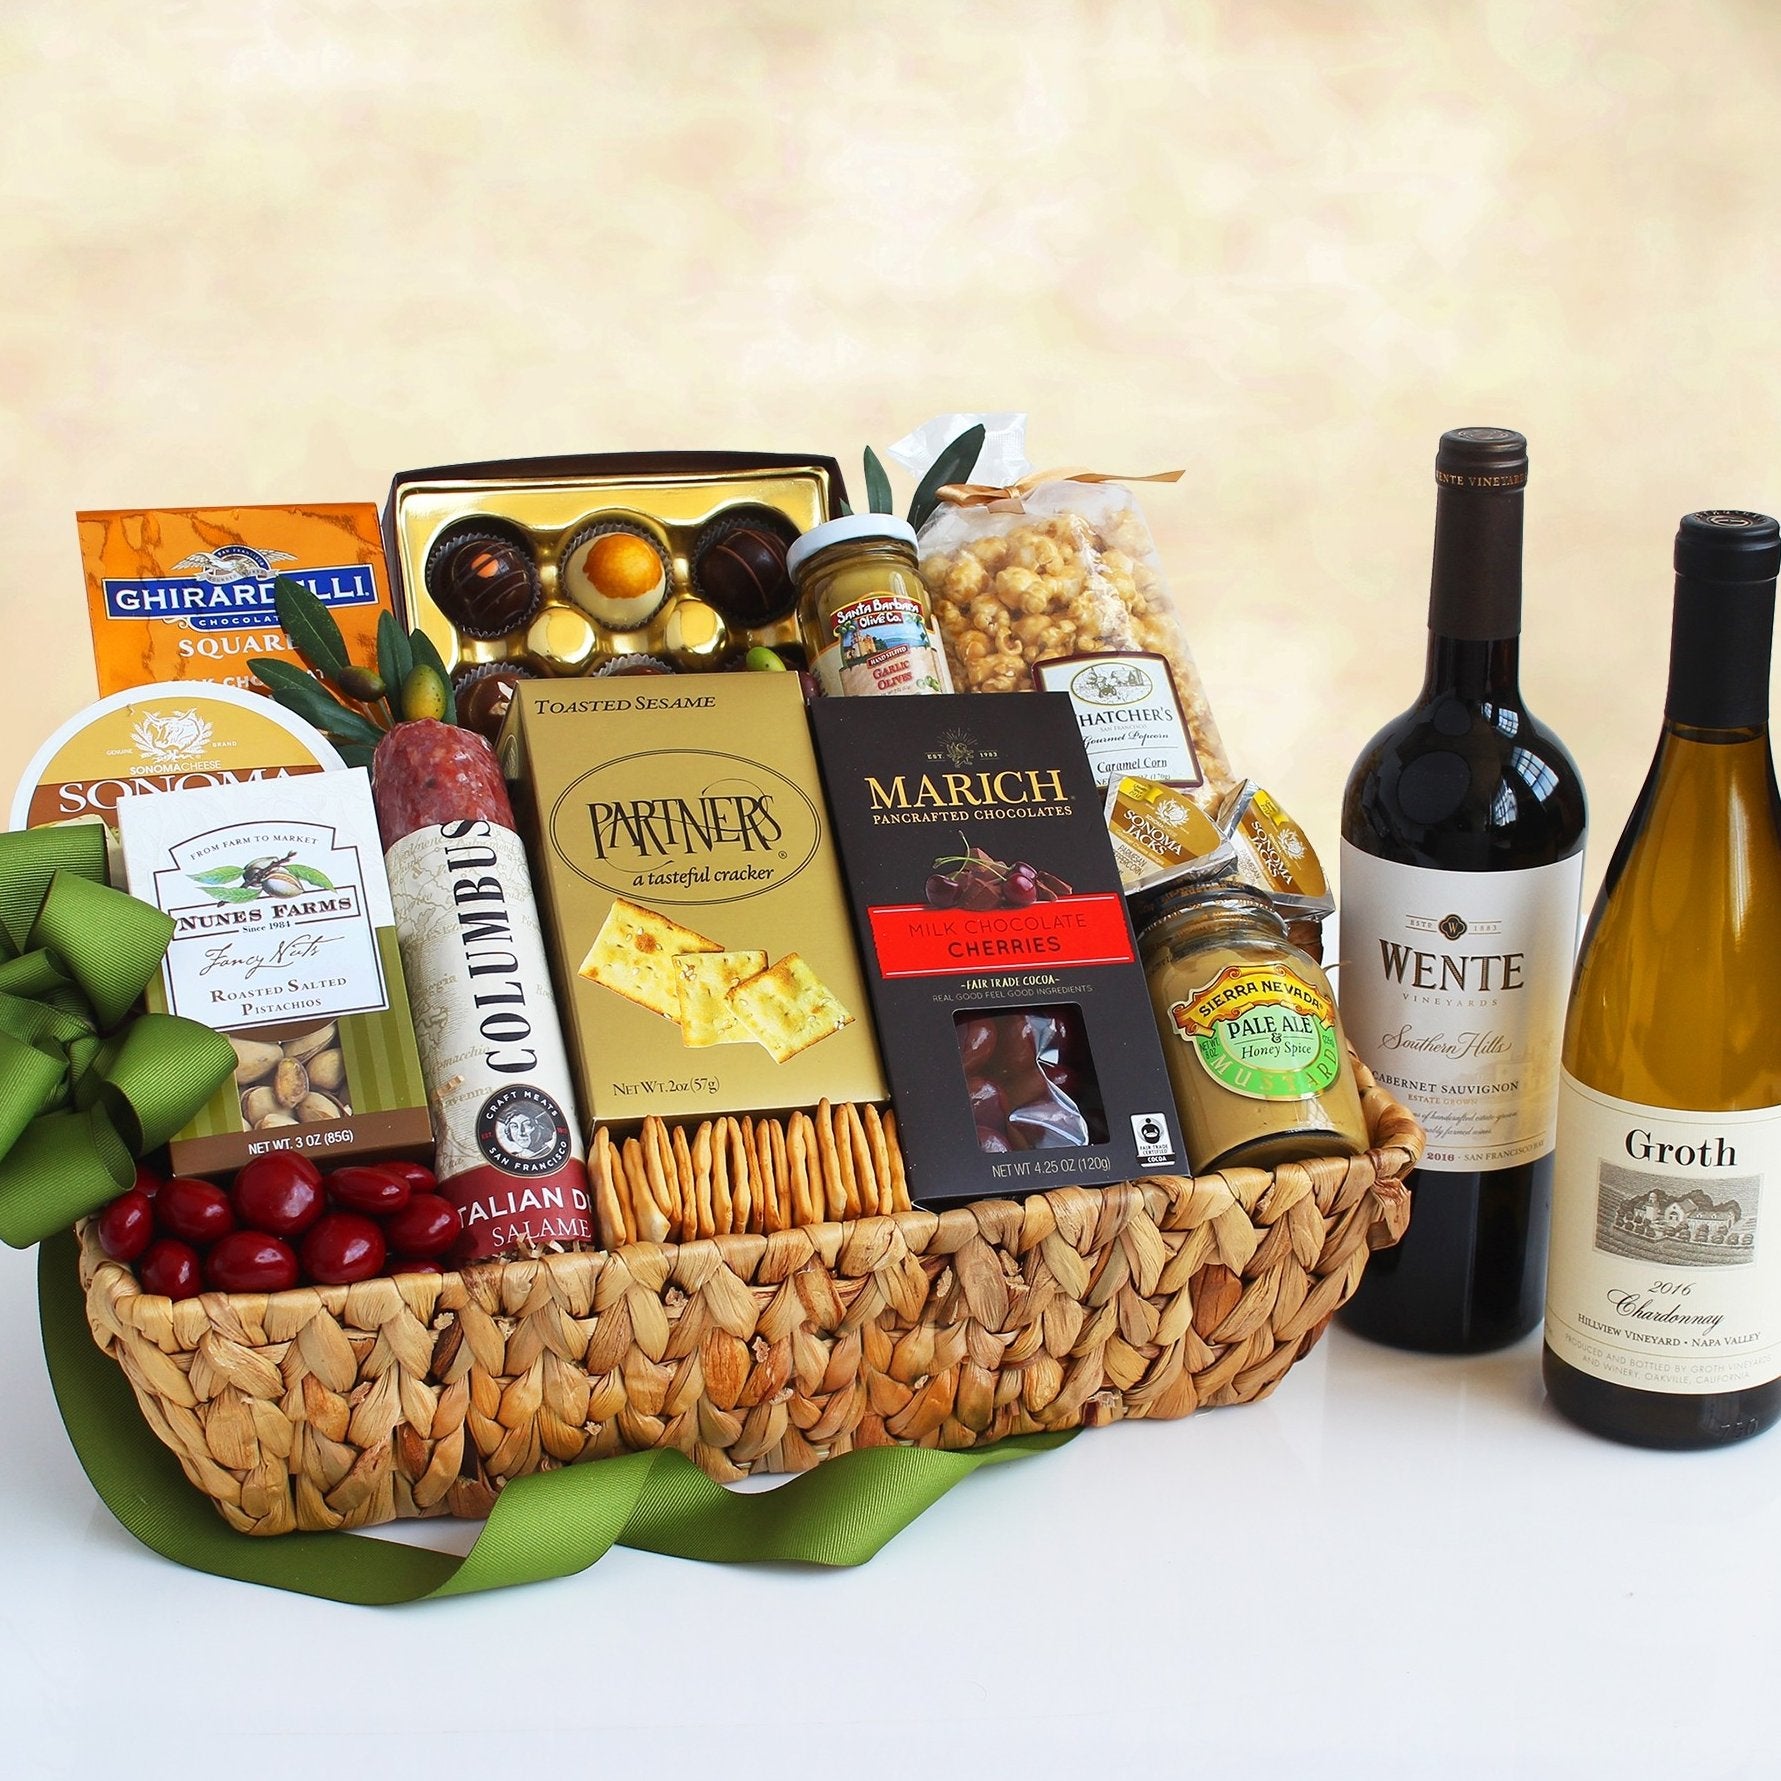 Wente & Groth Duet: Premium Wine Gift Basket